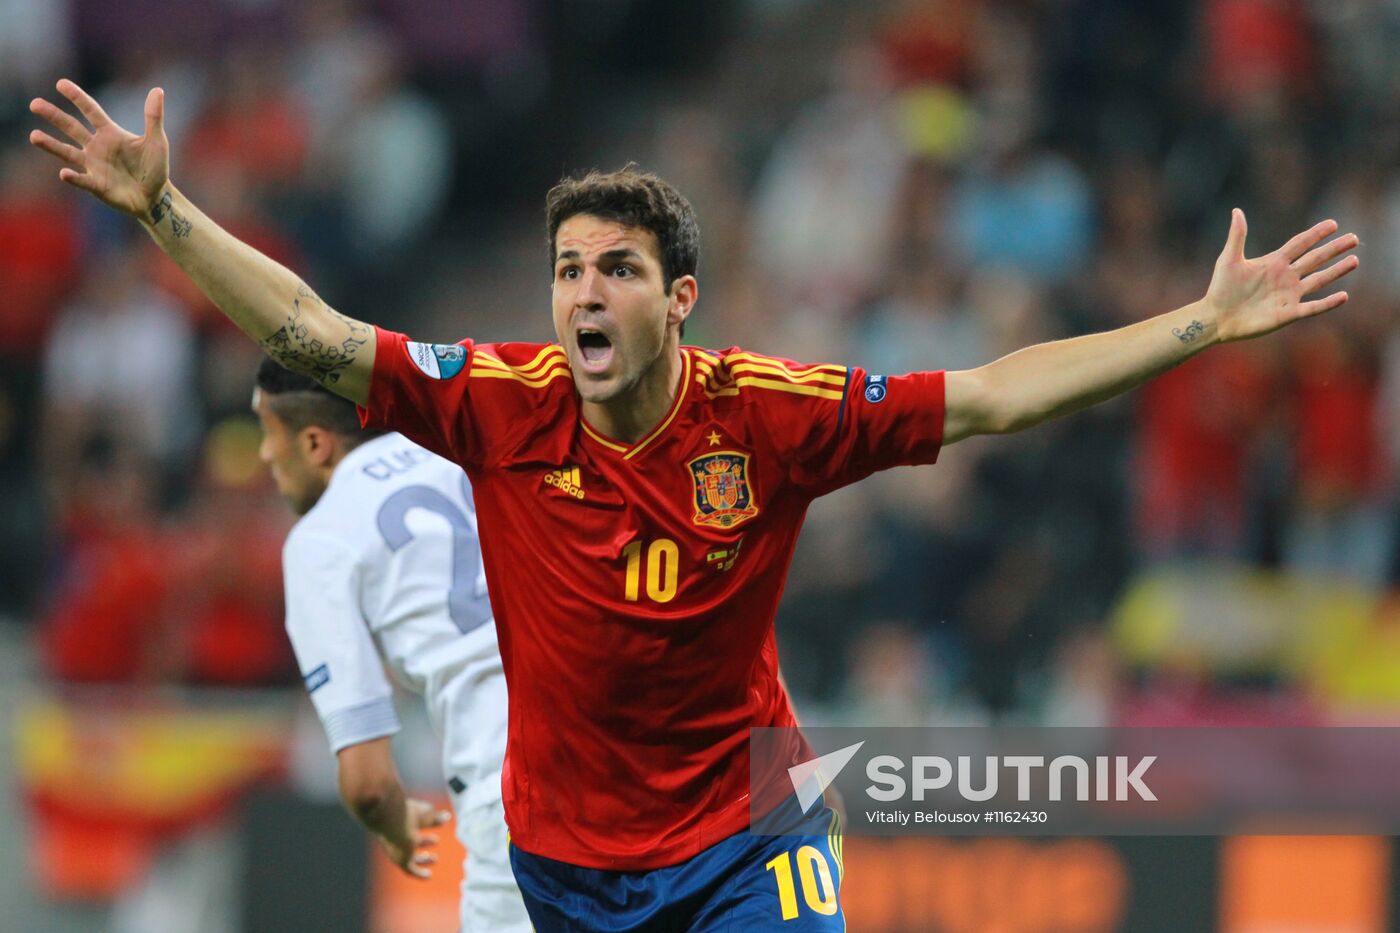 UEFA Football Euro 2012. Spain vs. France